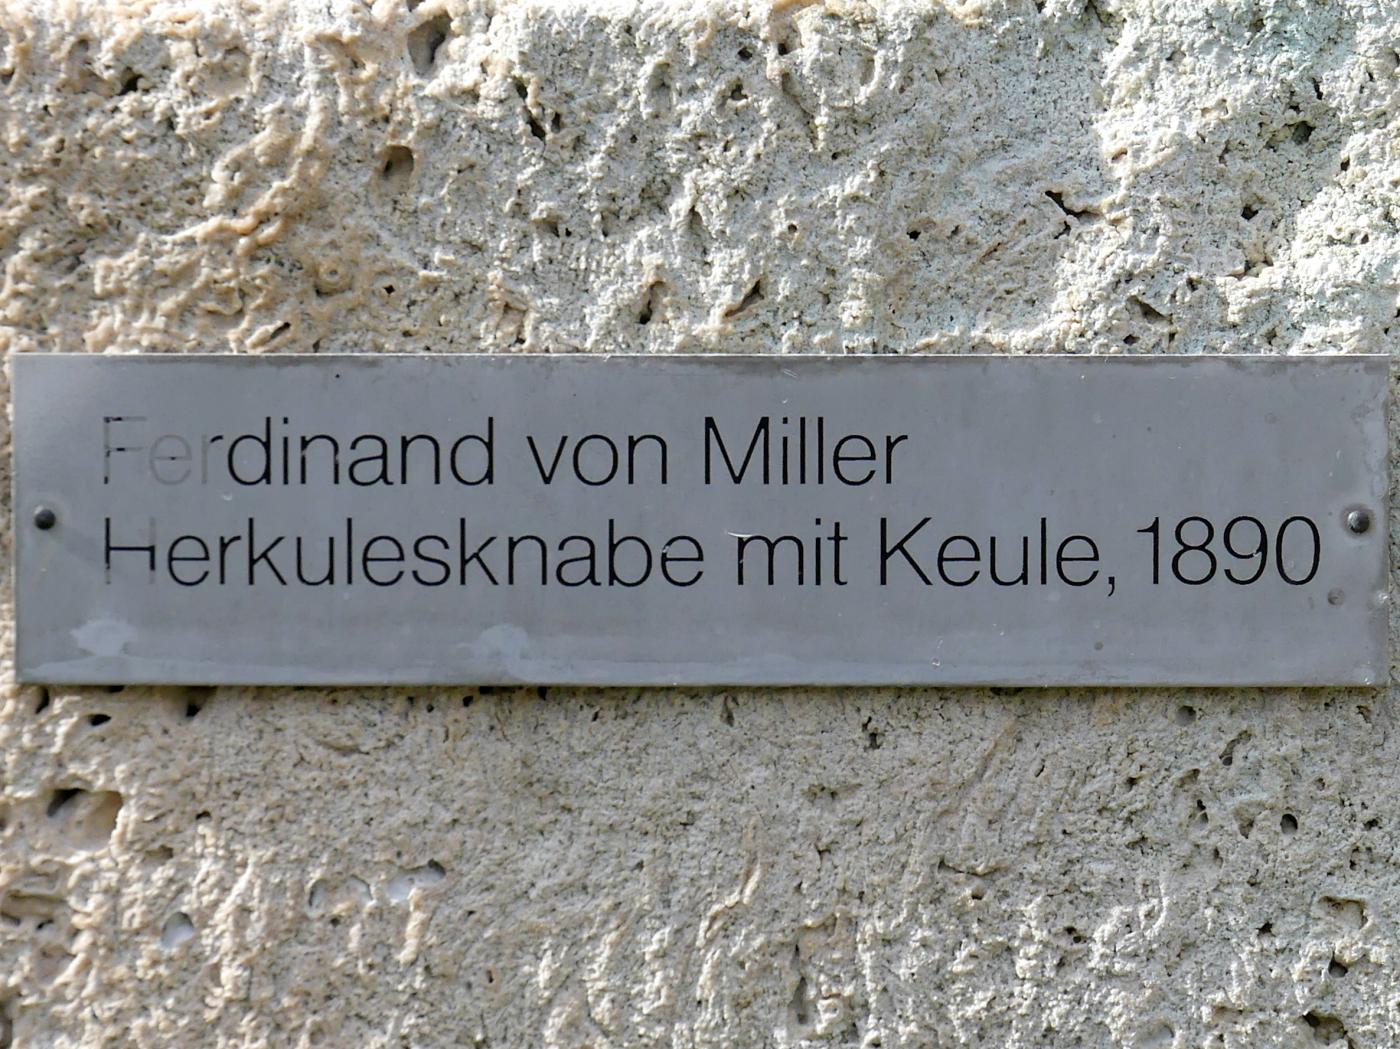 Ferdinand von Miller (1890), Herkulesknabe mit Keule, München, Lenbachhaus, Garten, 1890, Bild 4/4